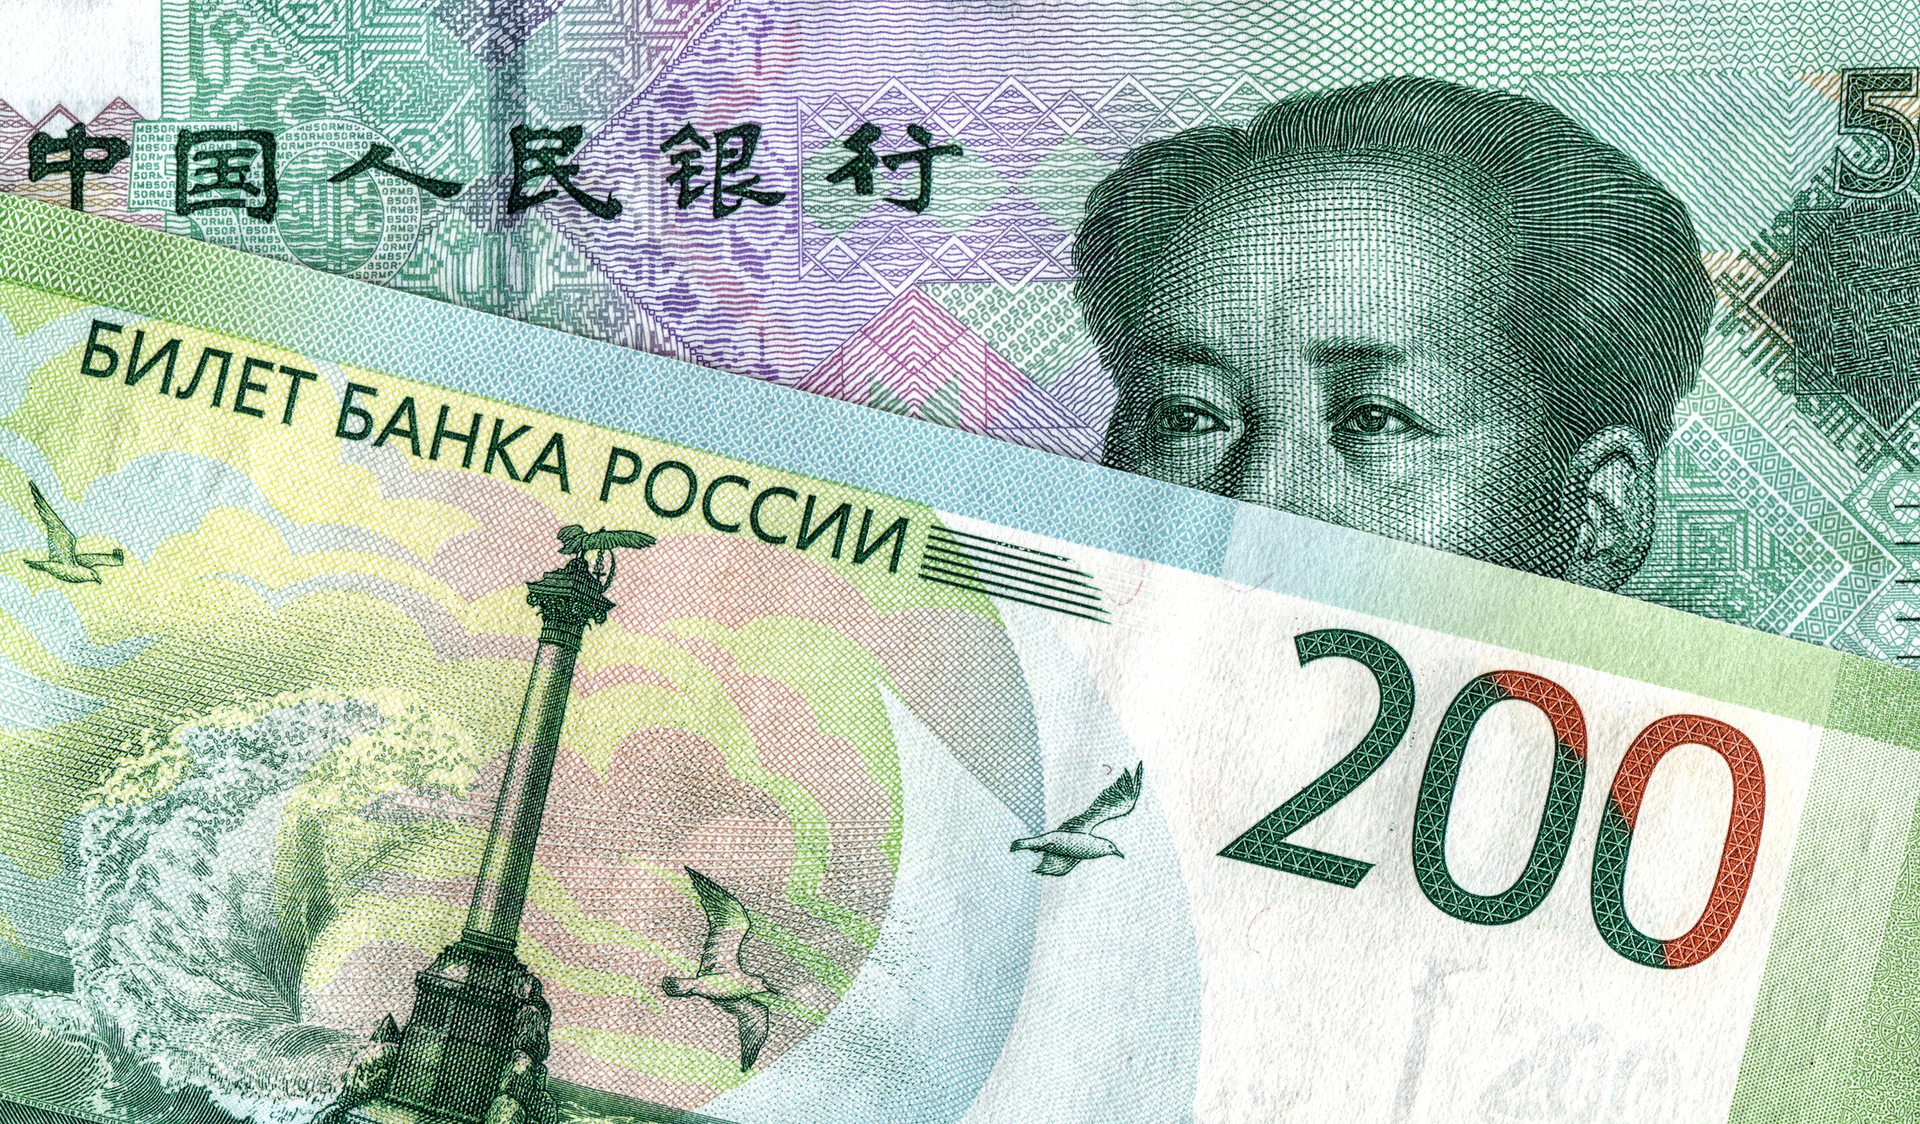 1000000 рублей в юанях. Китай Россия финансы. Китайский юань. Юань (валюта). Российско китайская валюта.